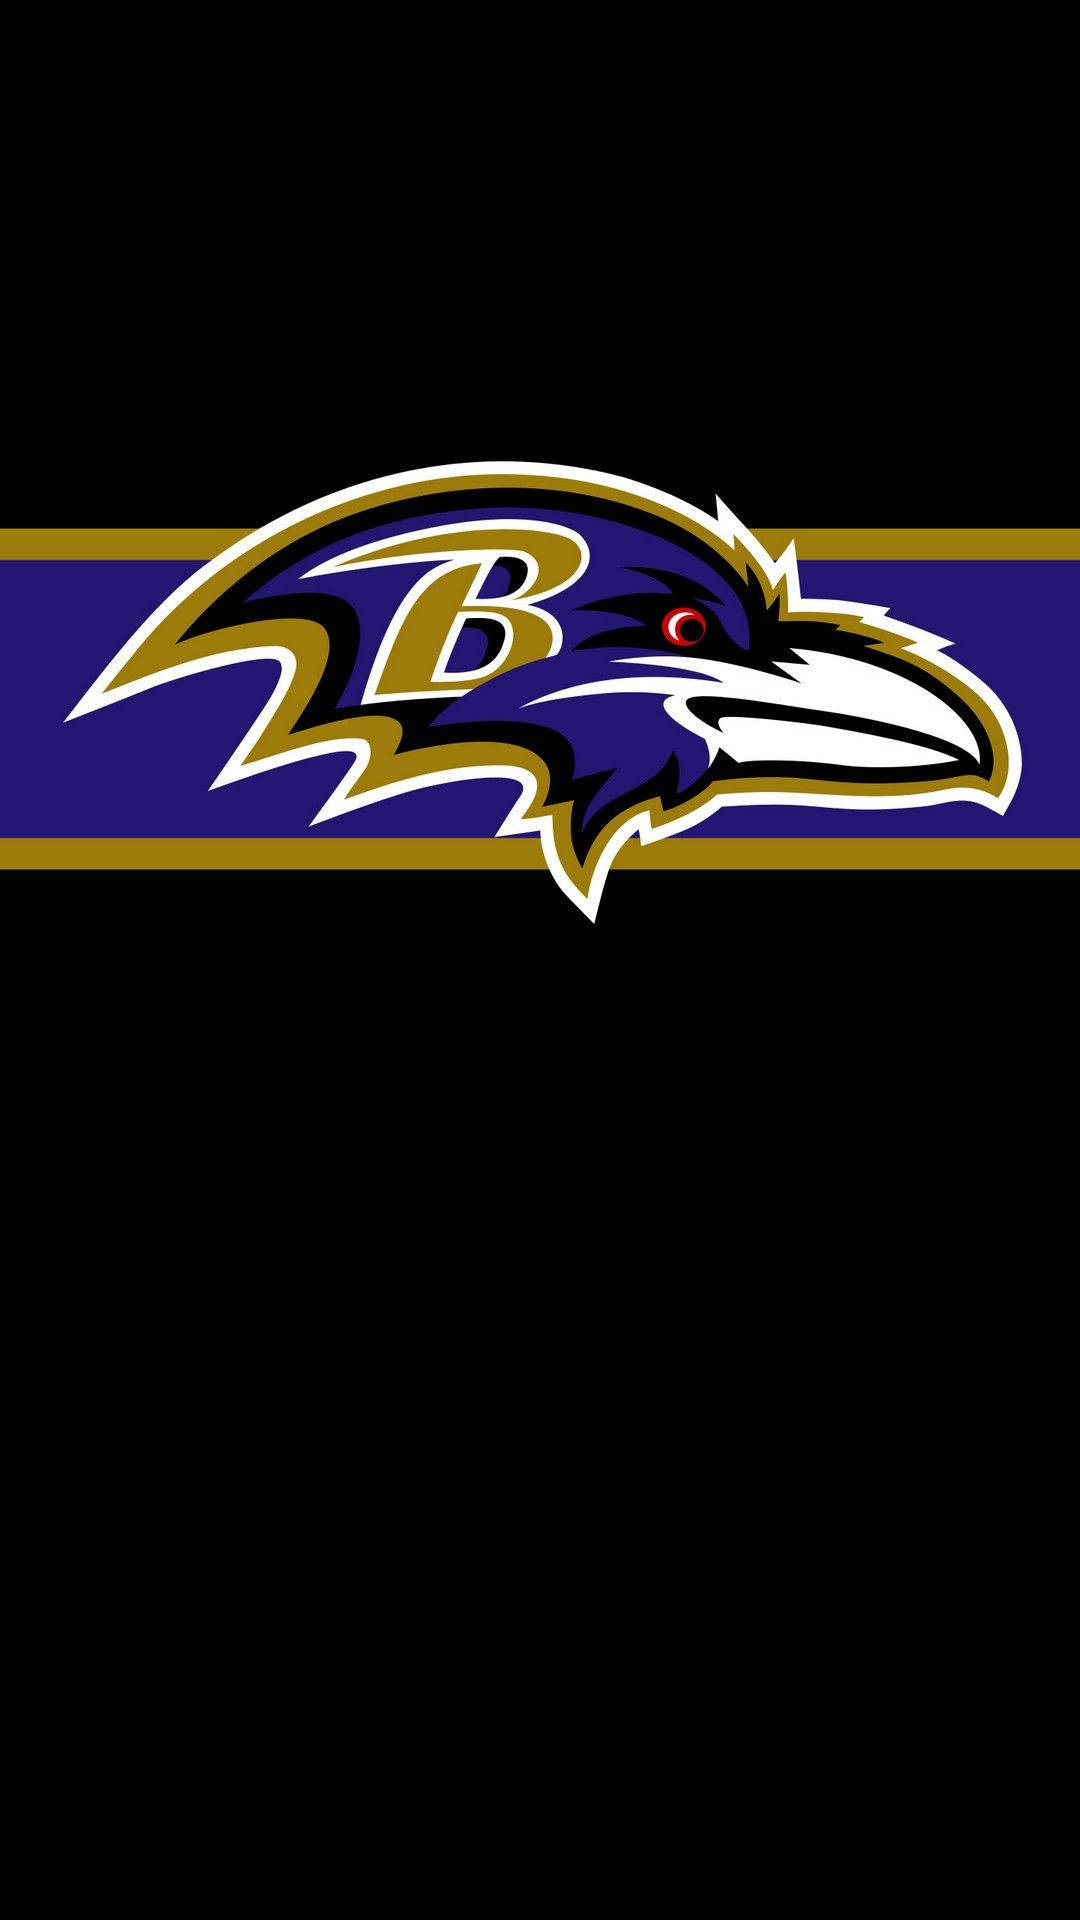 !Vis vis din støtte til Baltimore Ravens - Download det nyeste Baltimore Ravens iPhone Wallpaper! Wallpaper